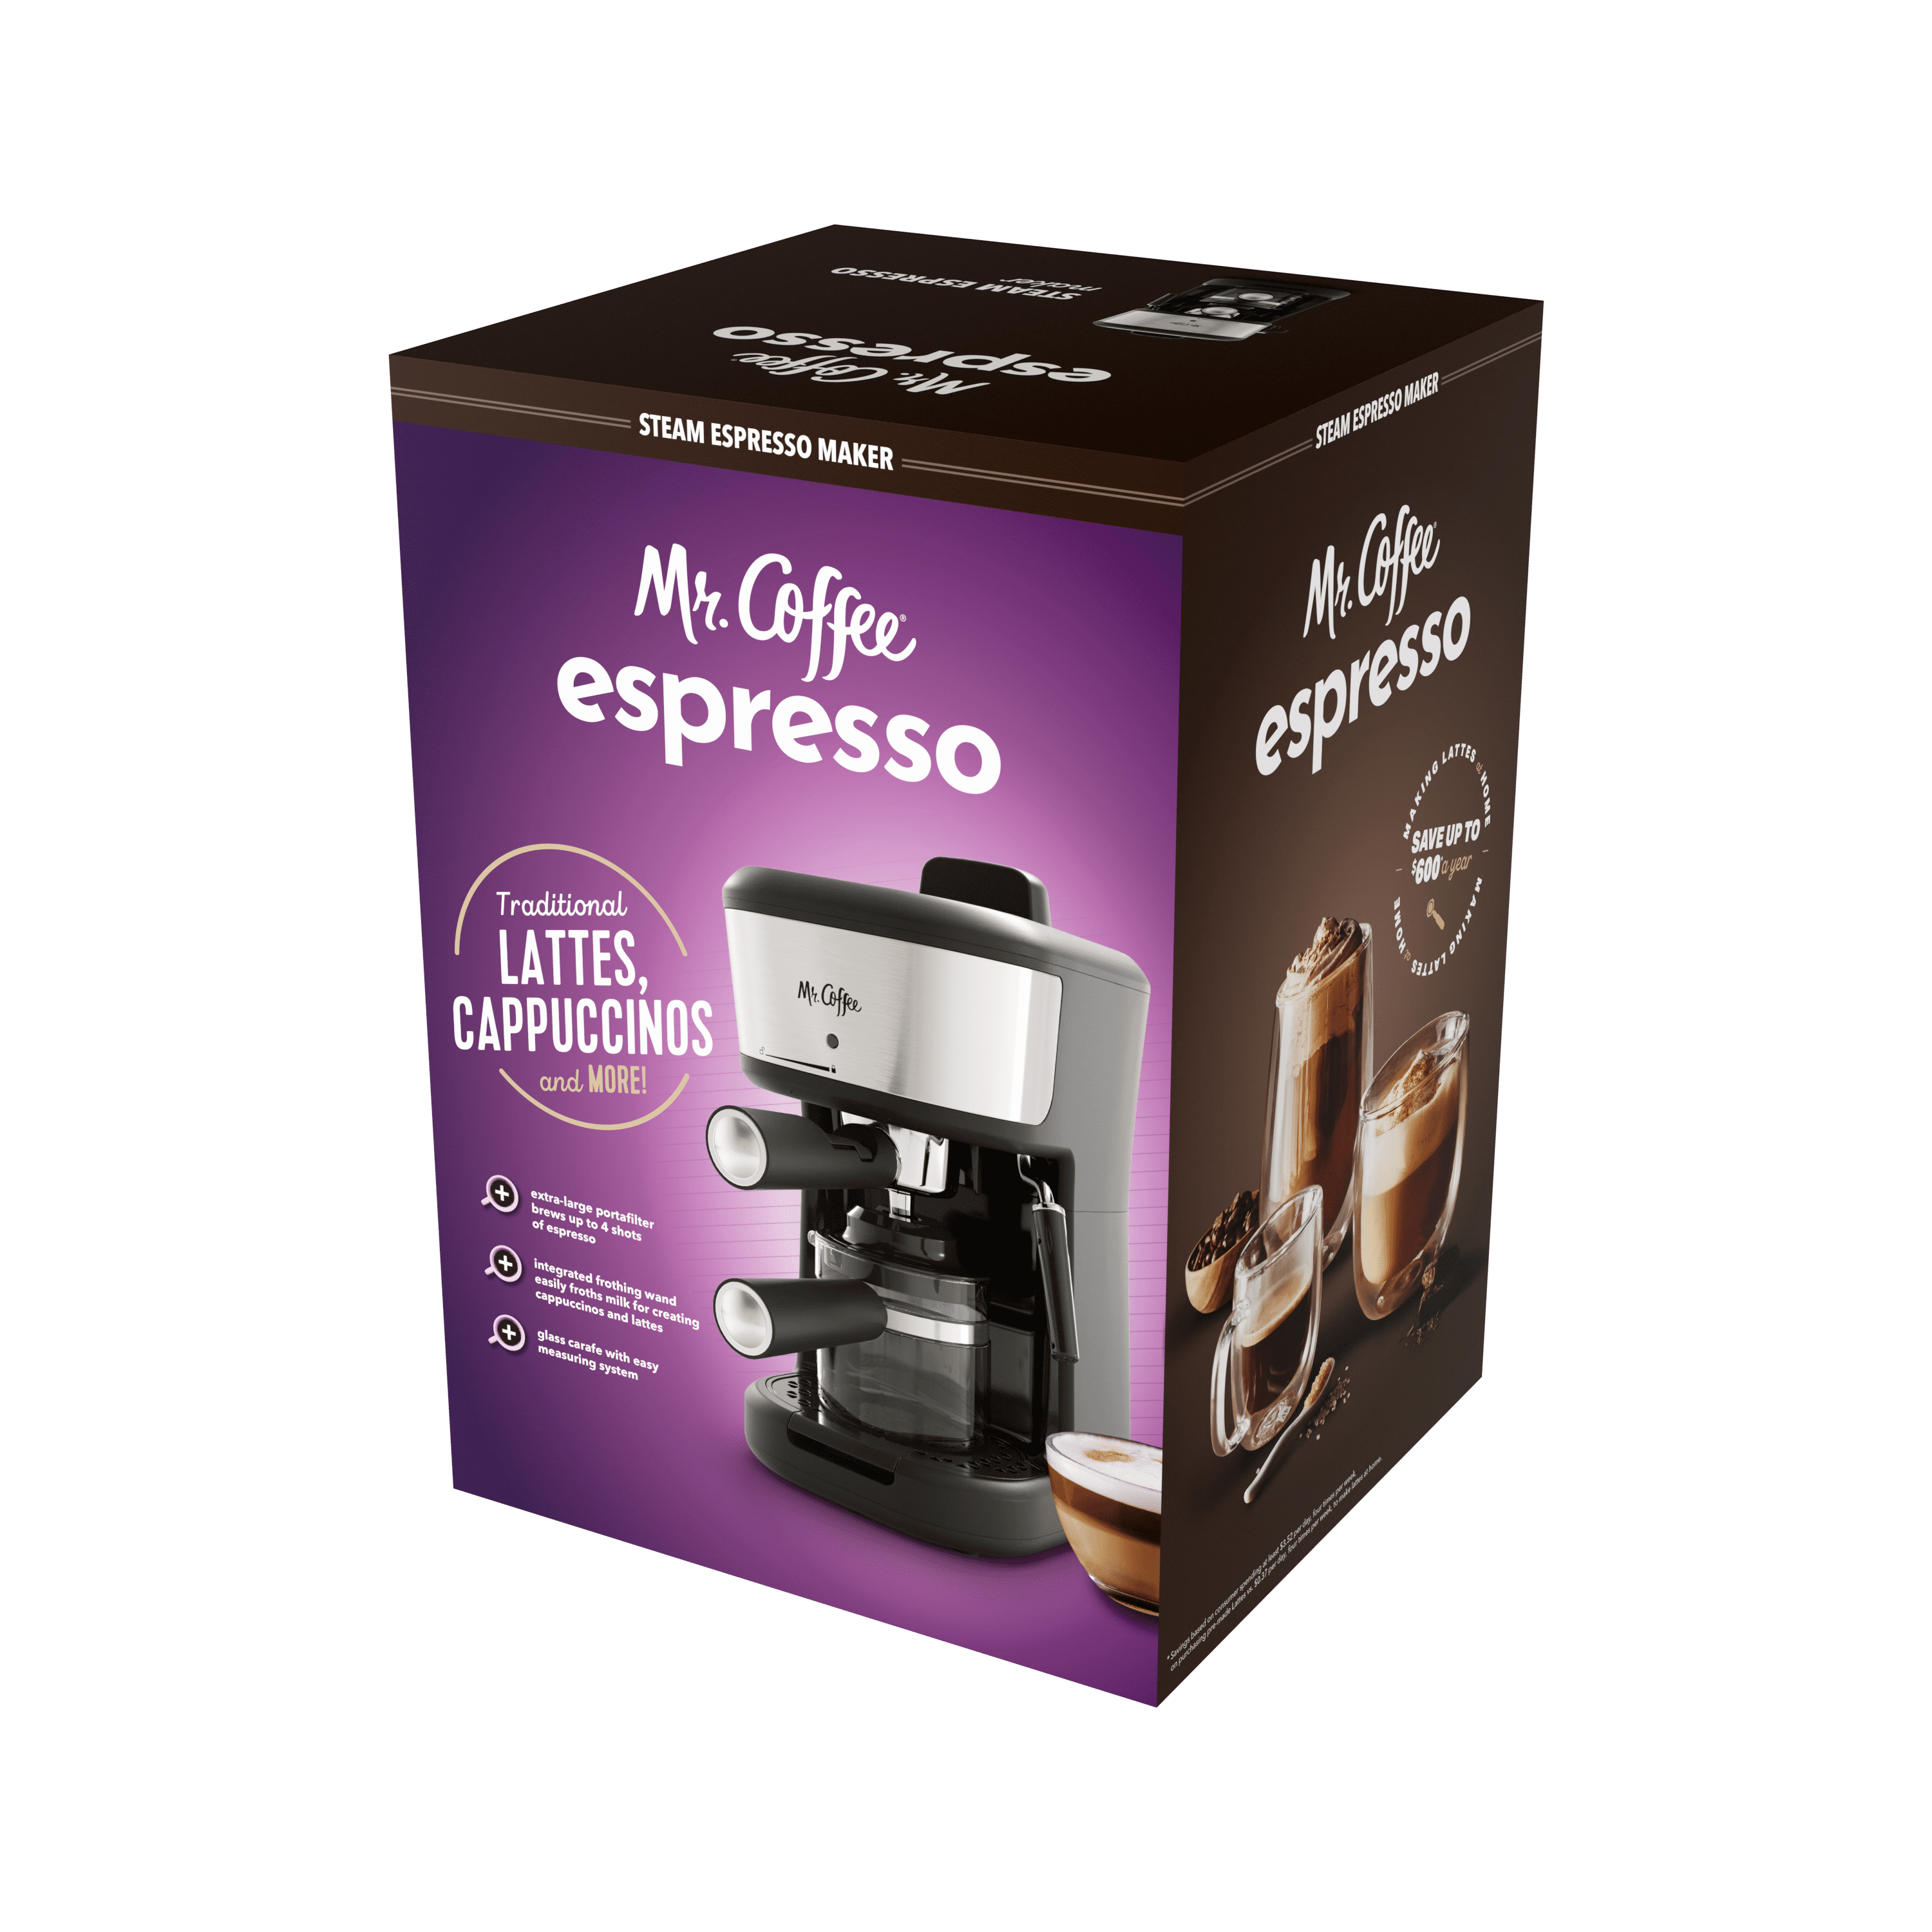 NEW Mr. Coffee 4-Shot Steam Espresso, Cappuccino, and Latte Maker 2132816